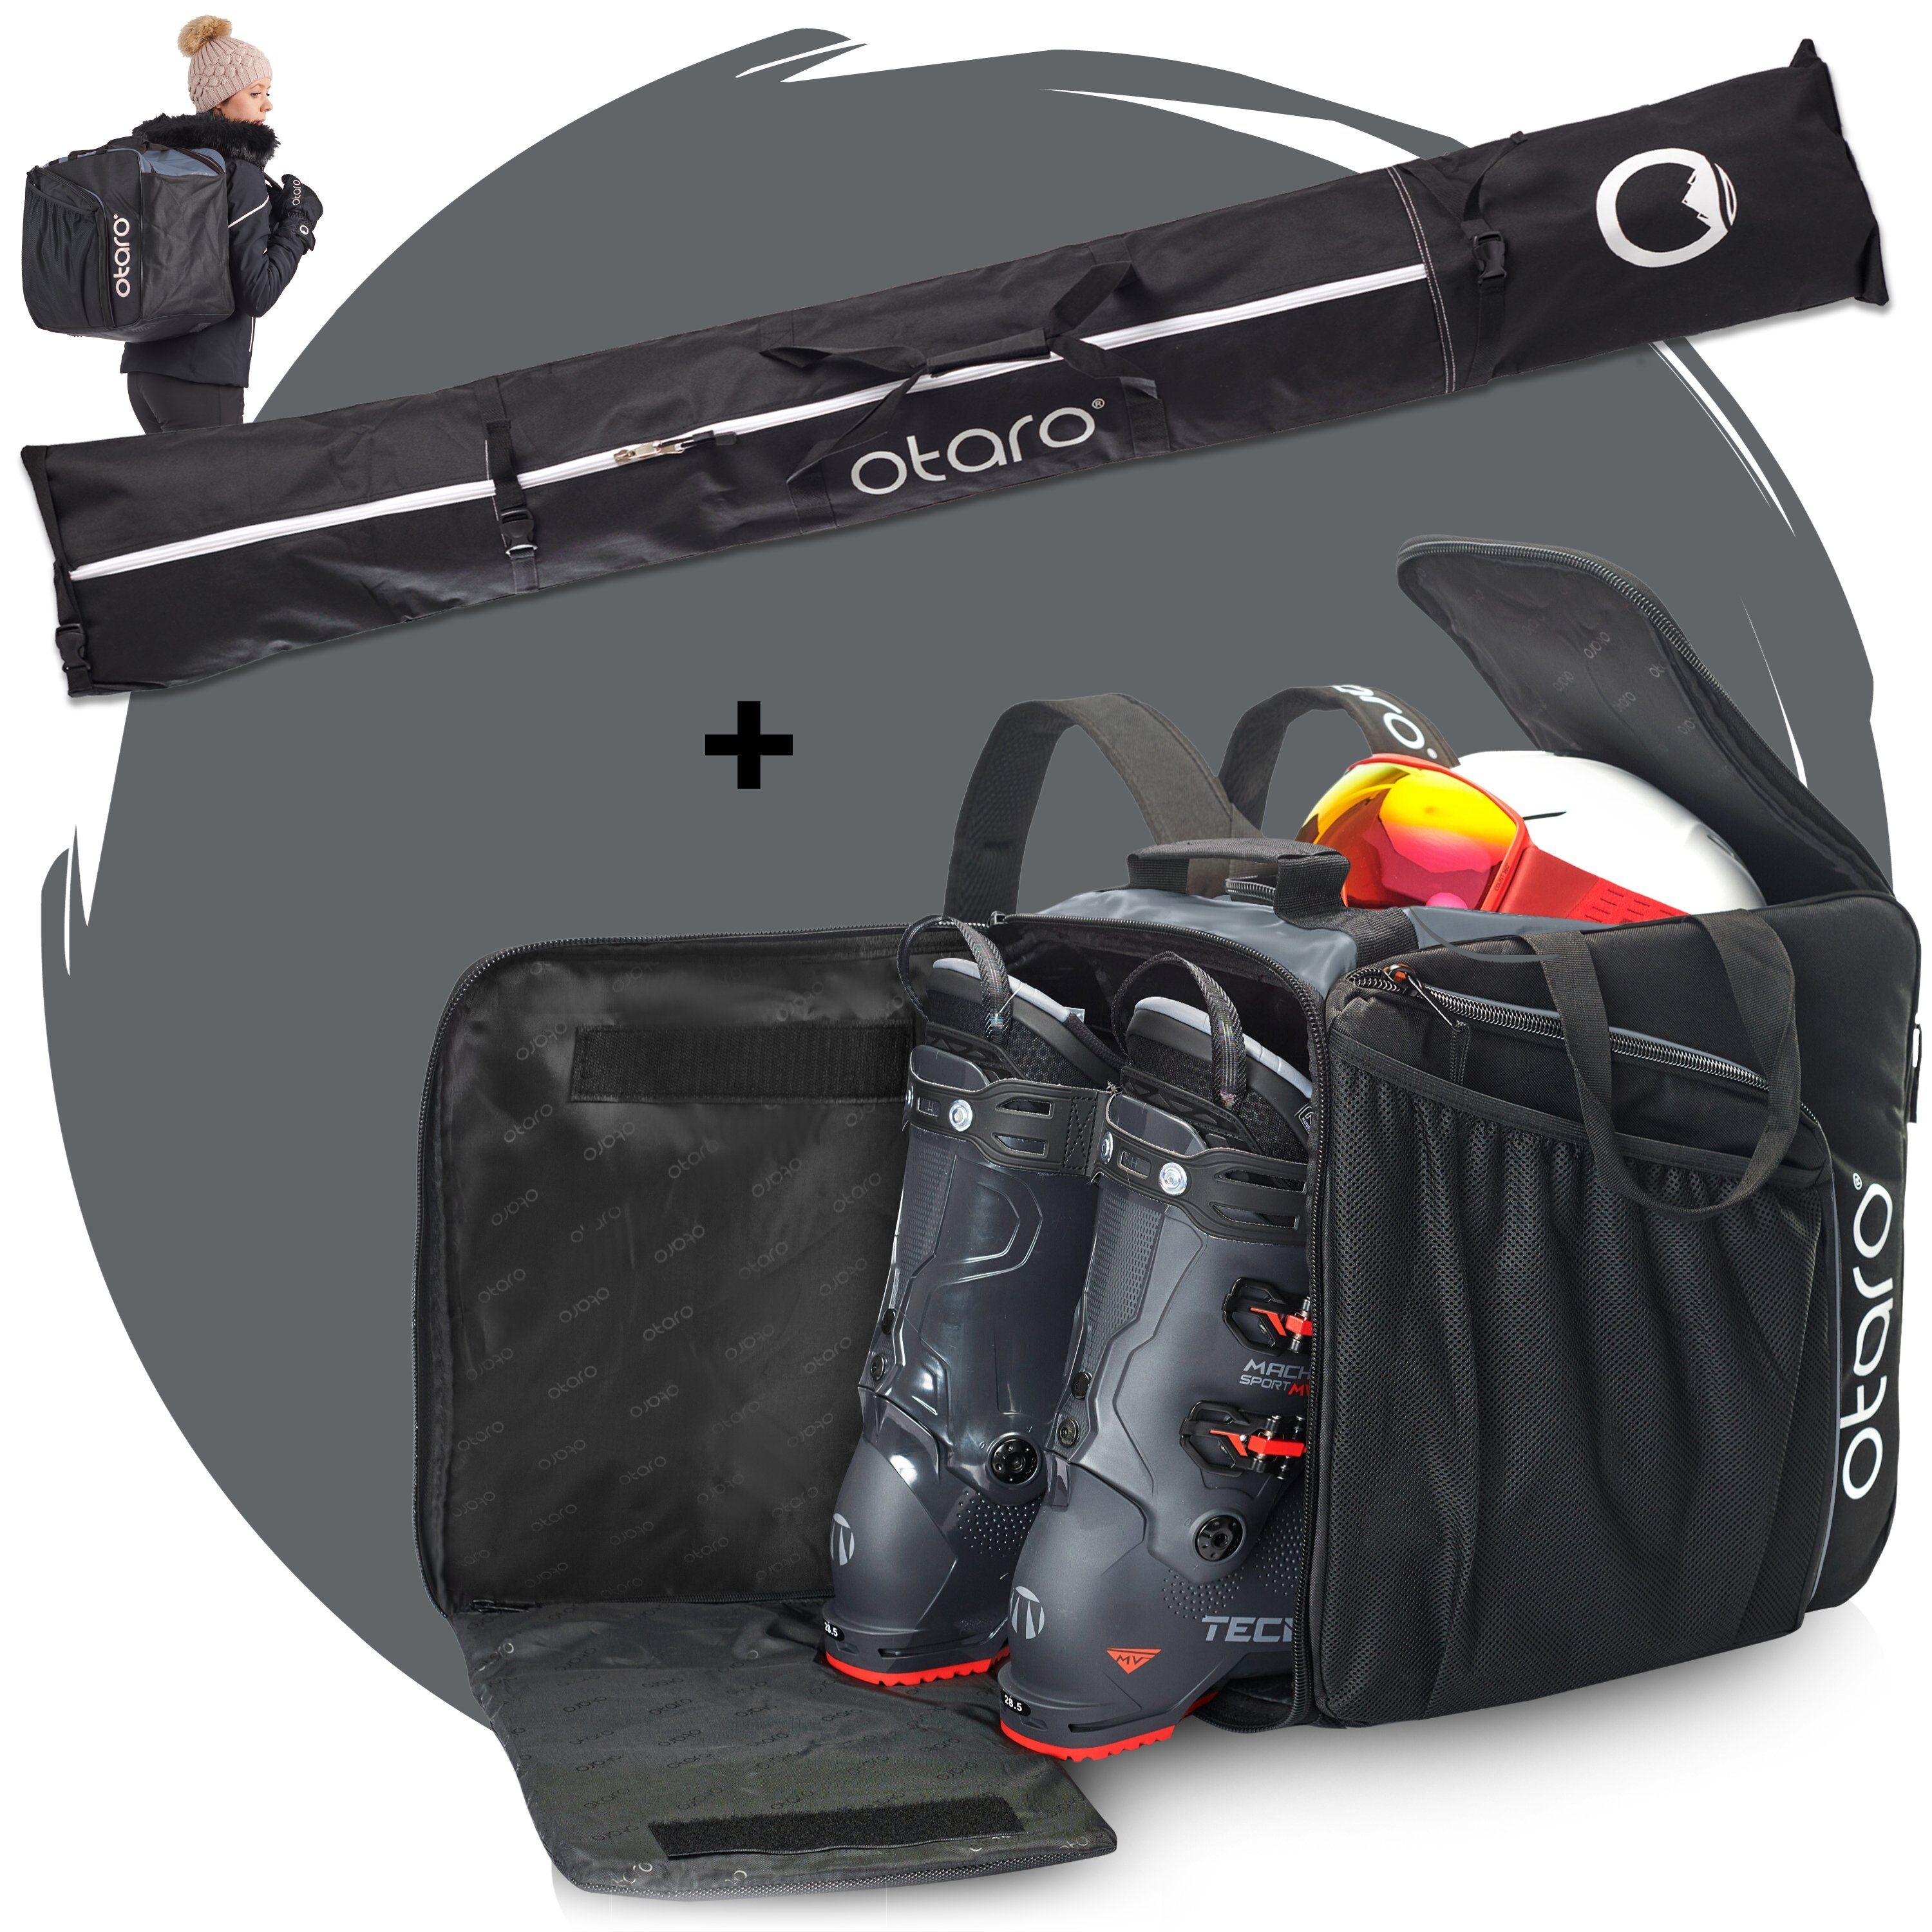 Perfekt Paar Schwarz (Schutz Standfläche, Skischuhtasche Sporttasche für Pro-Set für Ski & Felsgrau deine durchdacht, 1 Otaro Paar ausklappbare Ausrüstung, für 1 Stöcke) Ski Set: Skitasche, +